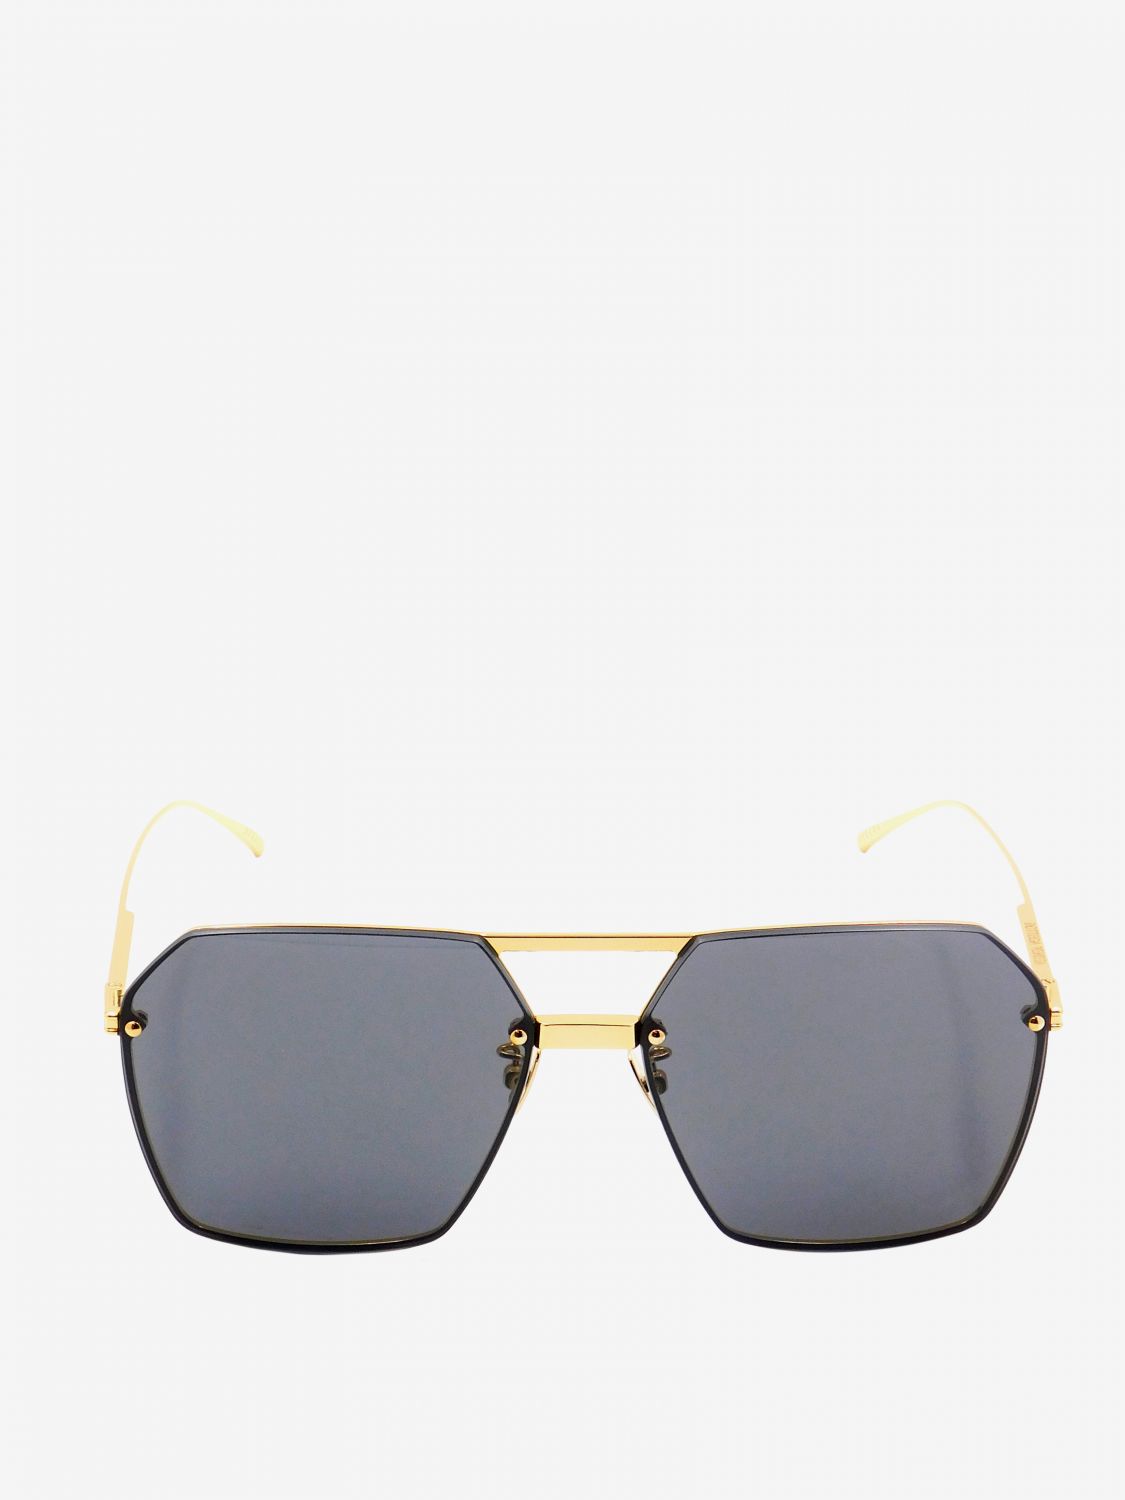 Bottega Veneta Women's BV1045S Sunglasses